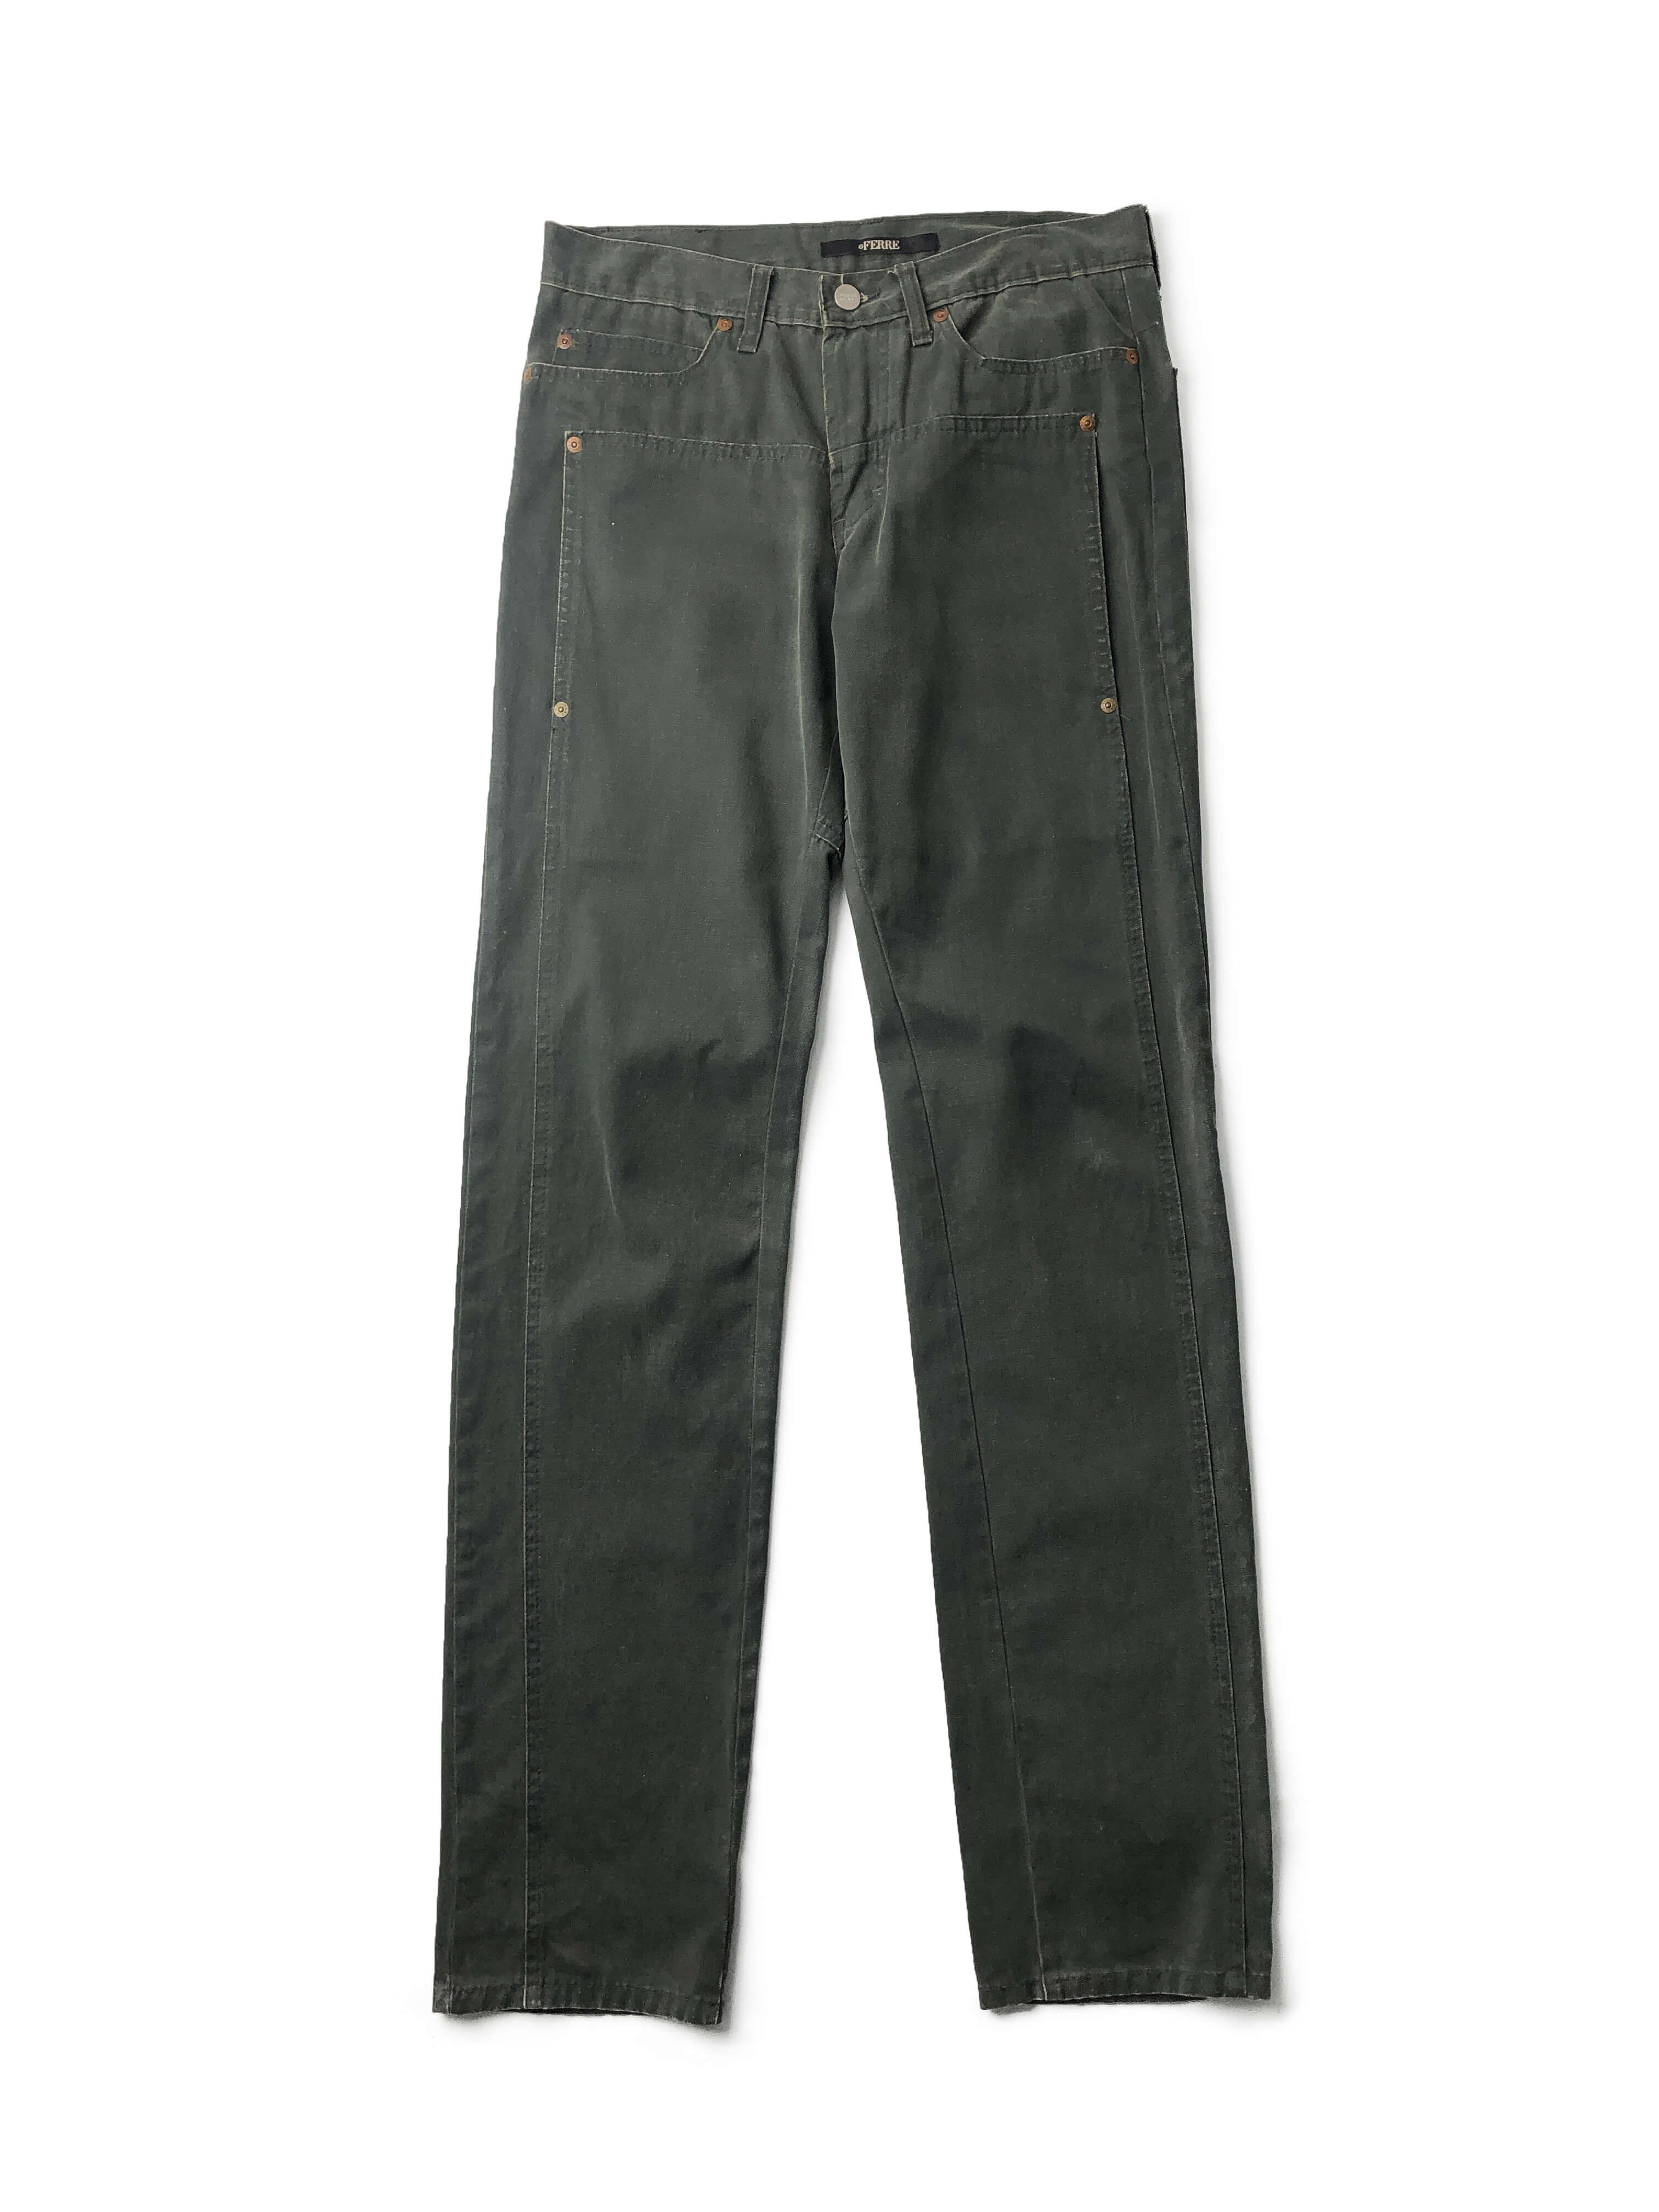 FERRE jeans double pocket pants